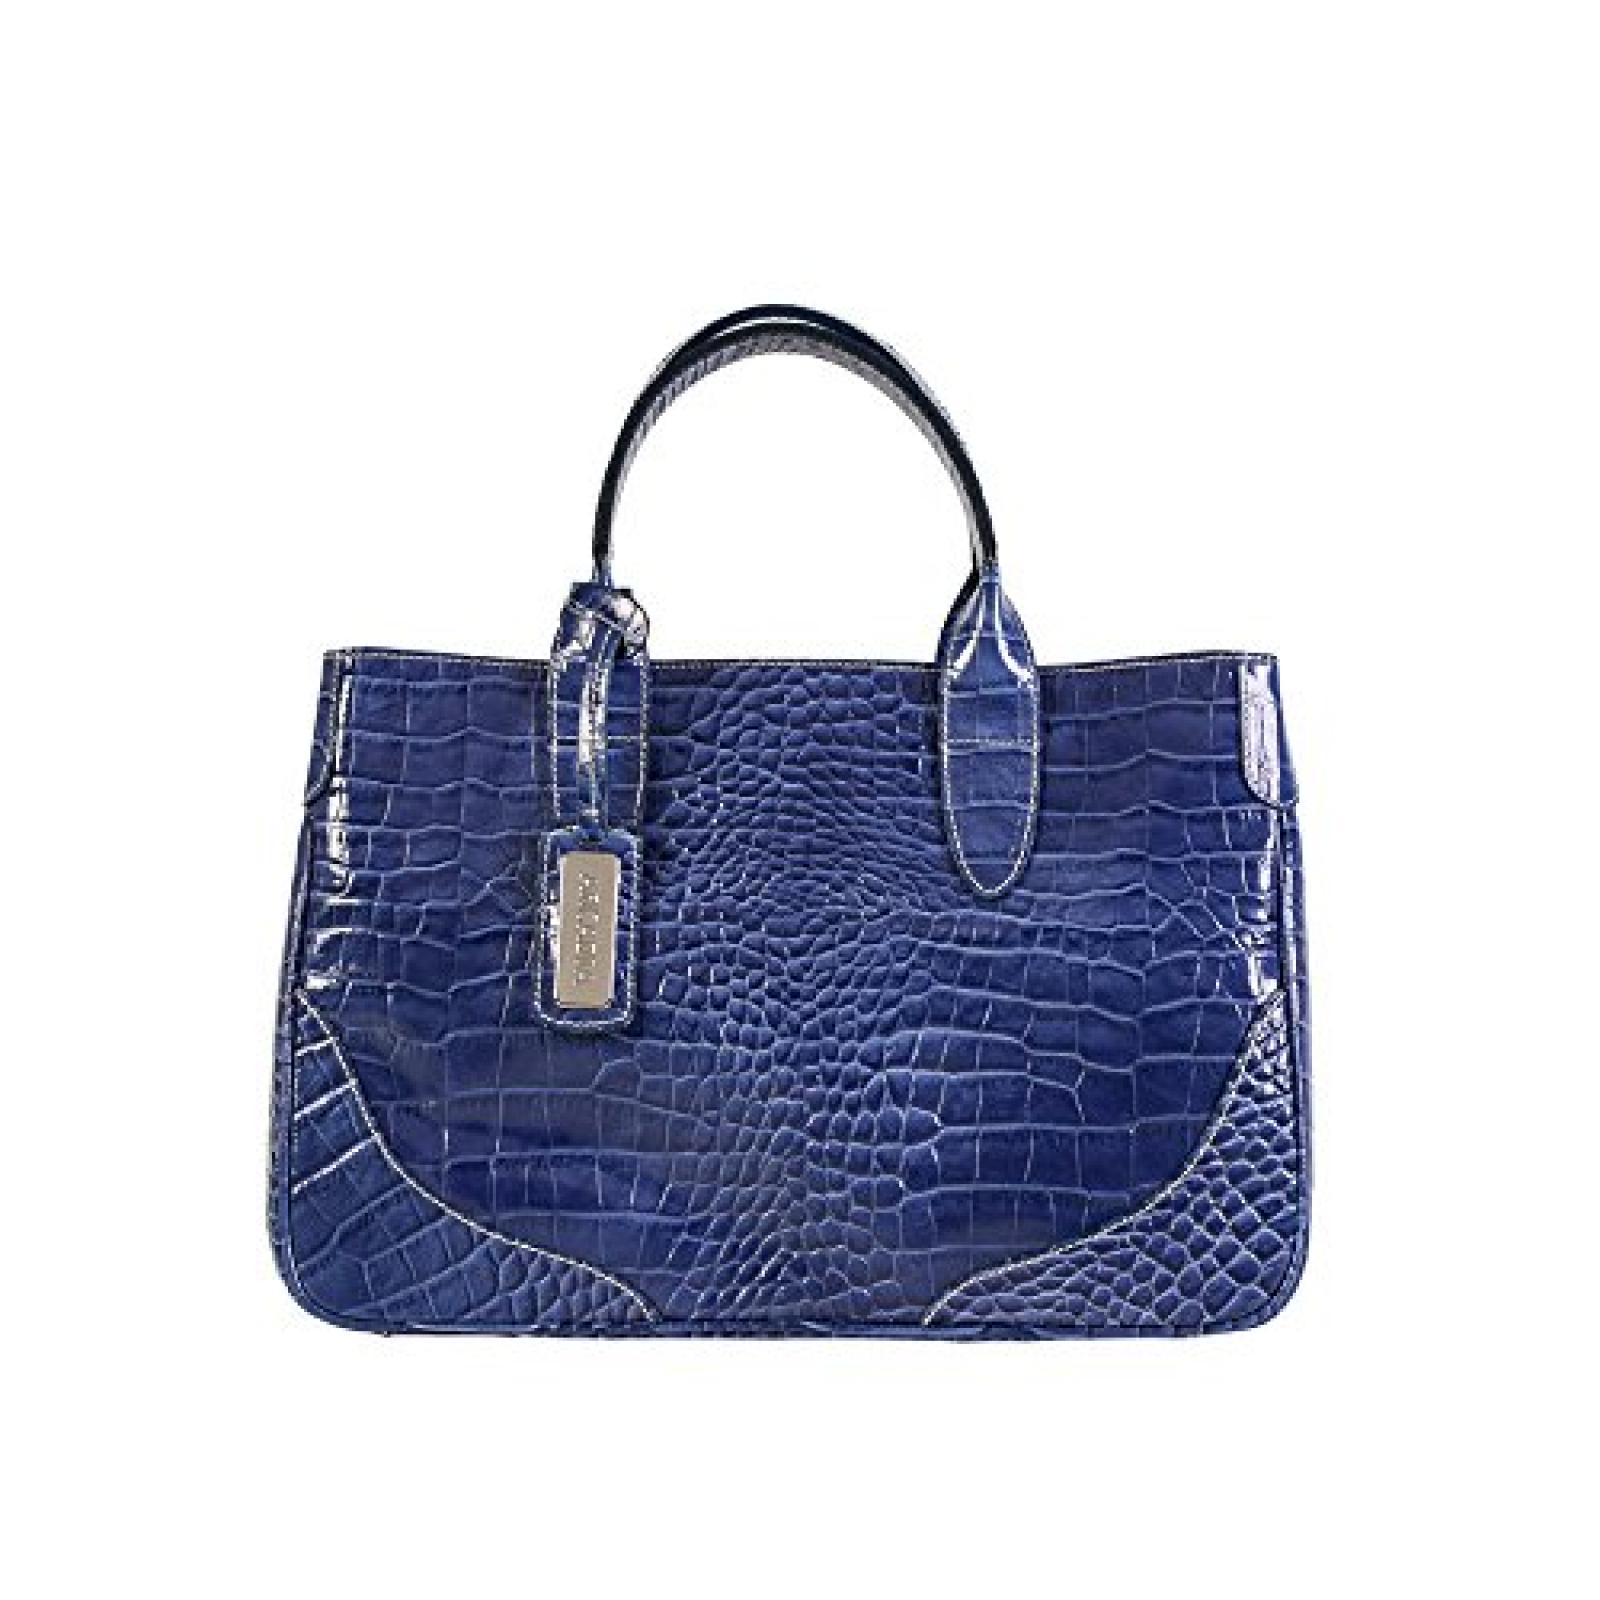 Arcadia Salina croc gedruckt italienischen Leder-Tragetasche Handtasche (blau) 